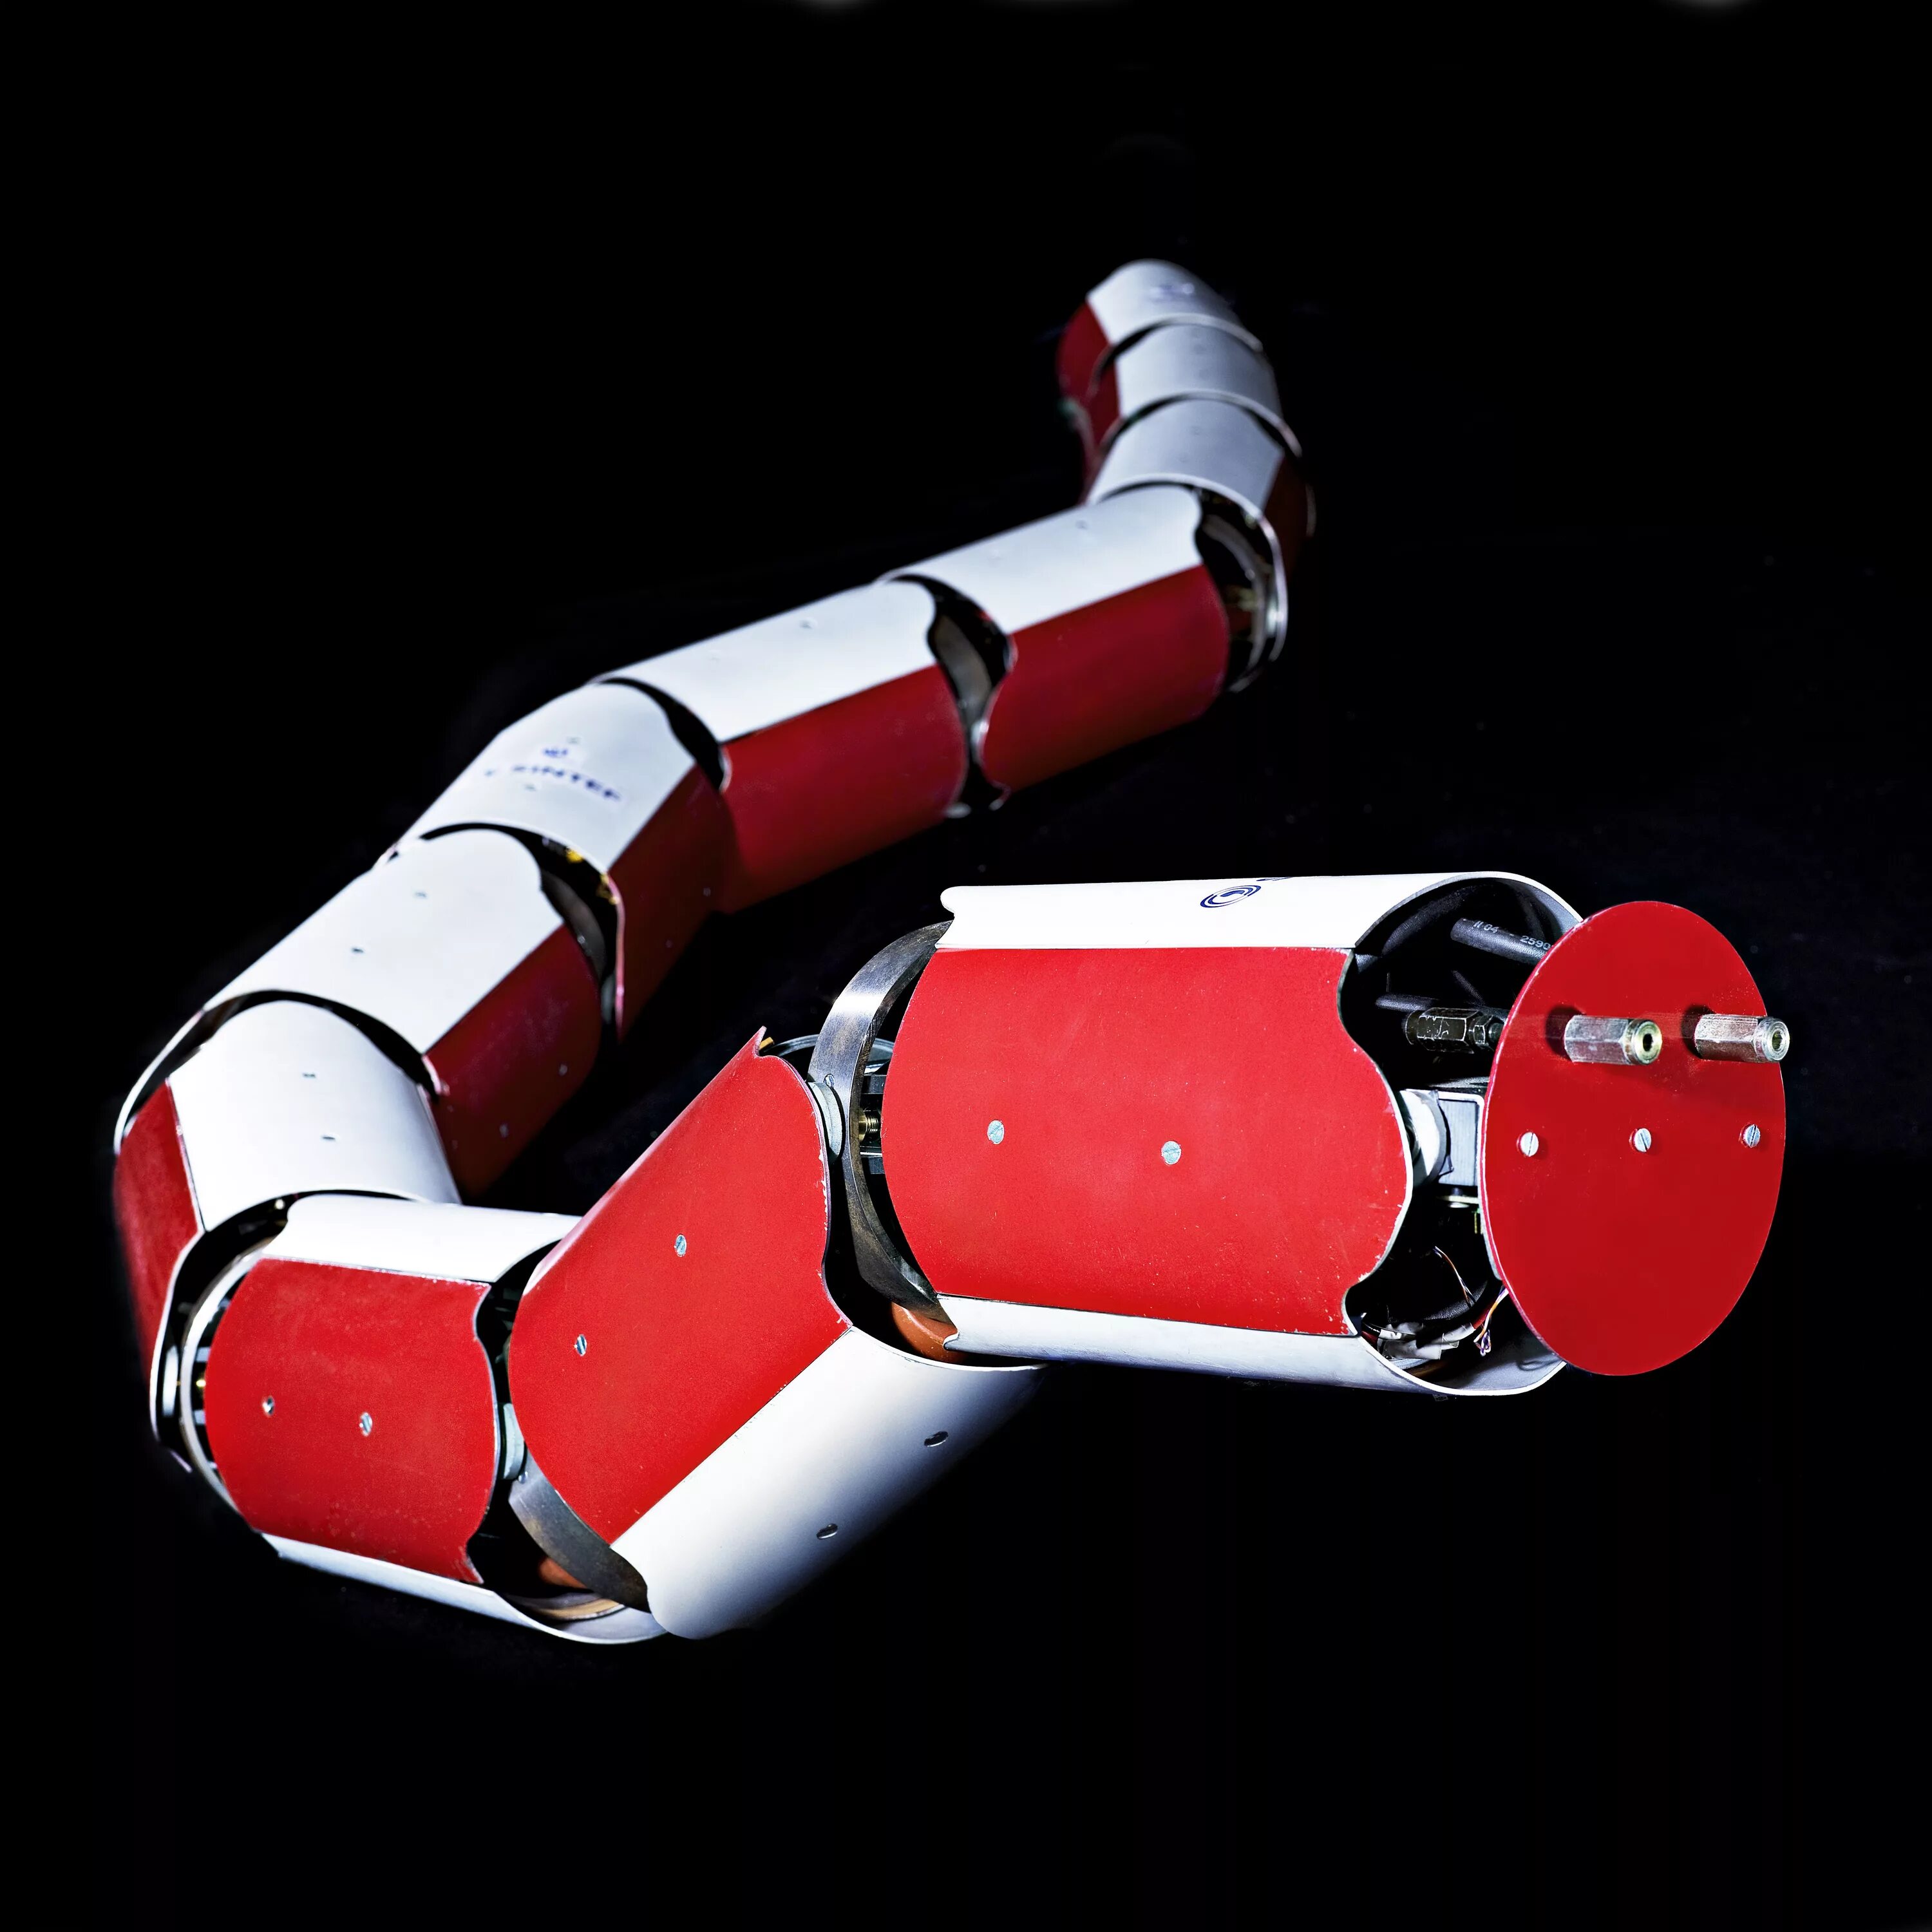 Змейка робот. Робот Snakebot. Роботизированный шланг Anna Konda. Робот змея Стэнфорд.